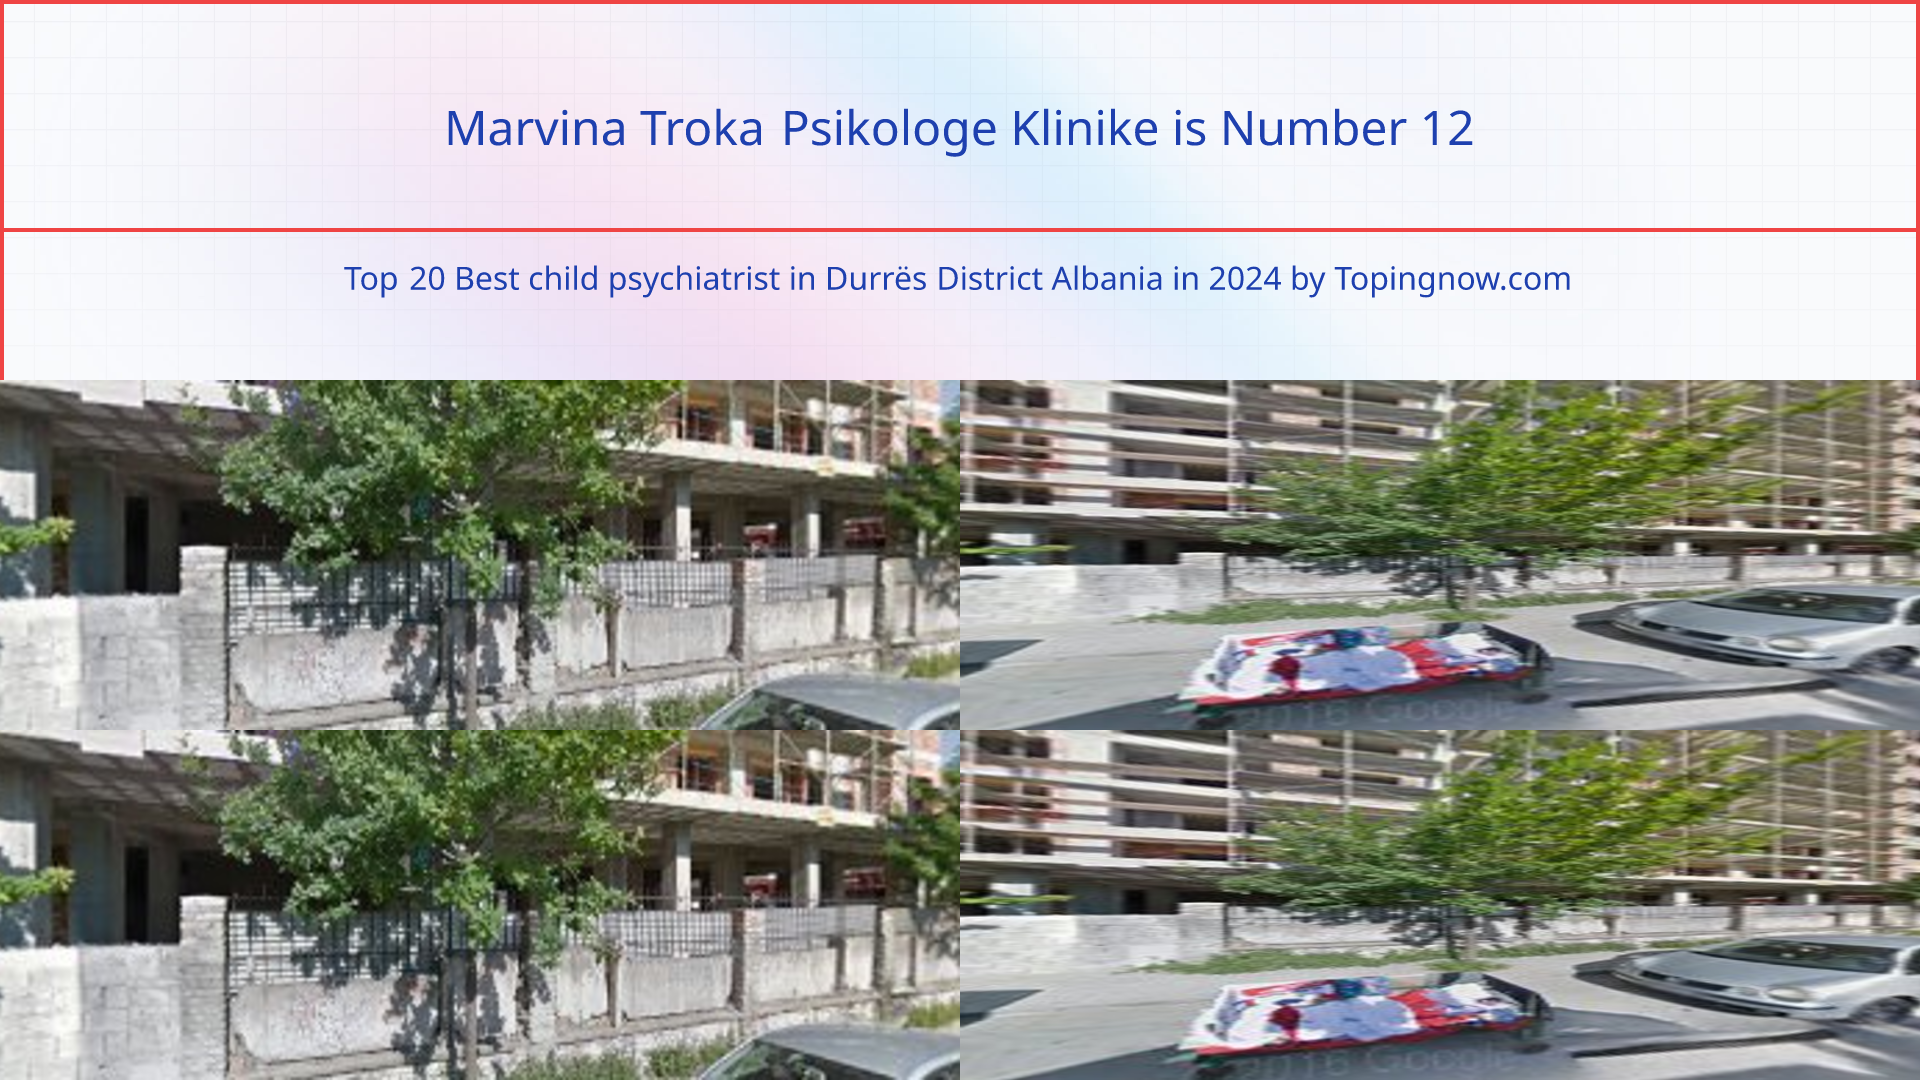 Marvina Troka Psikologe Klinike: Top 20 Best child psychiatrist in Durrës District Albania in 2024